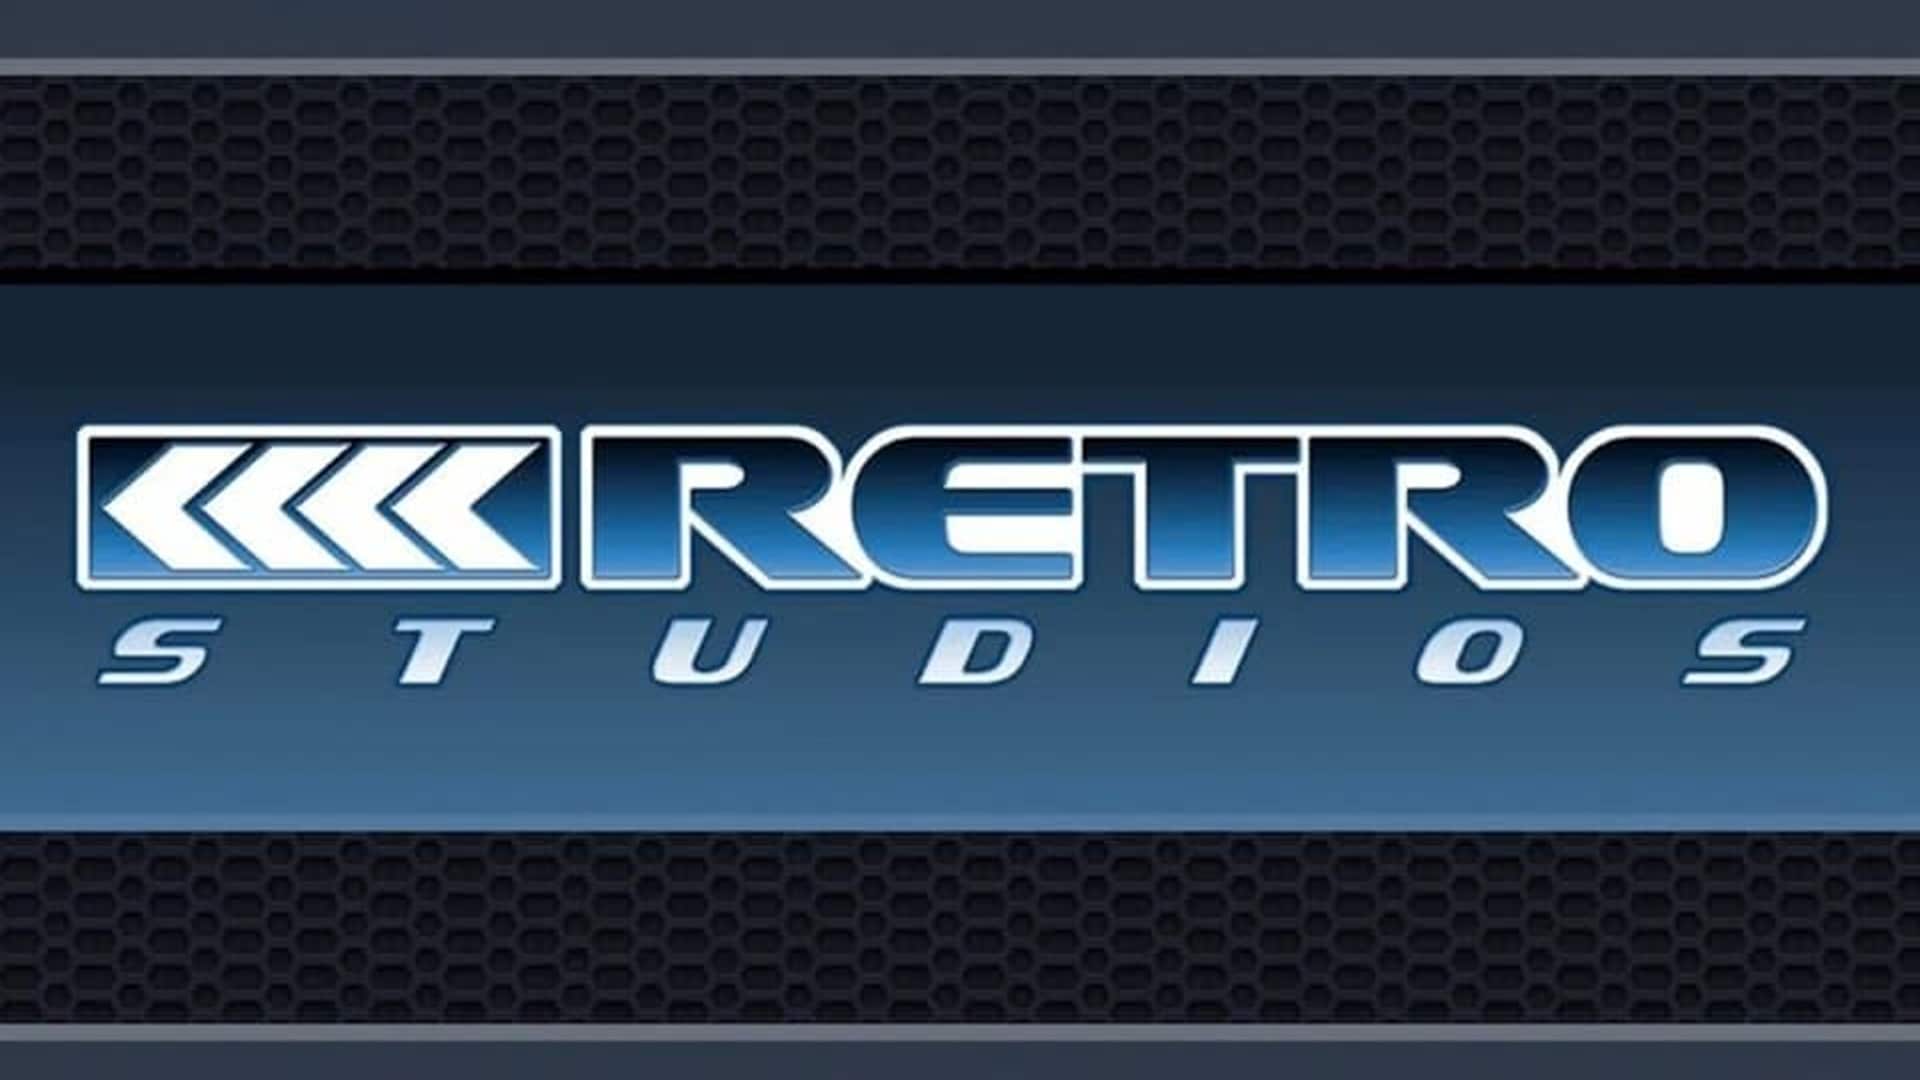 Retro Studios publica una nueva oferta de trabajo para Metroid Prime 4, GamersRD